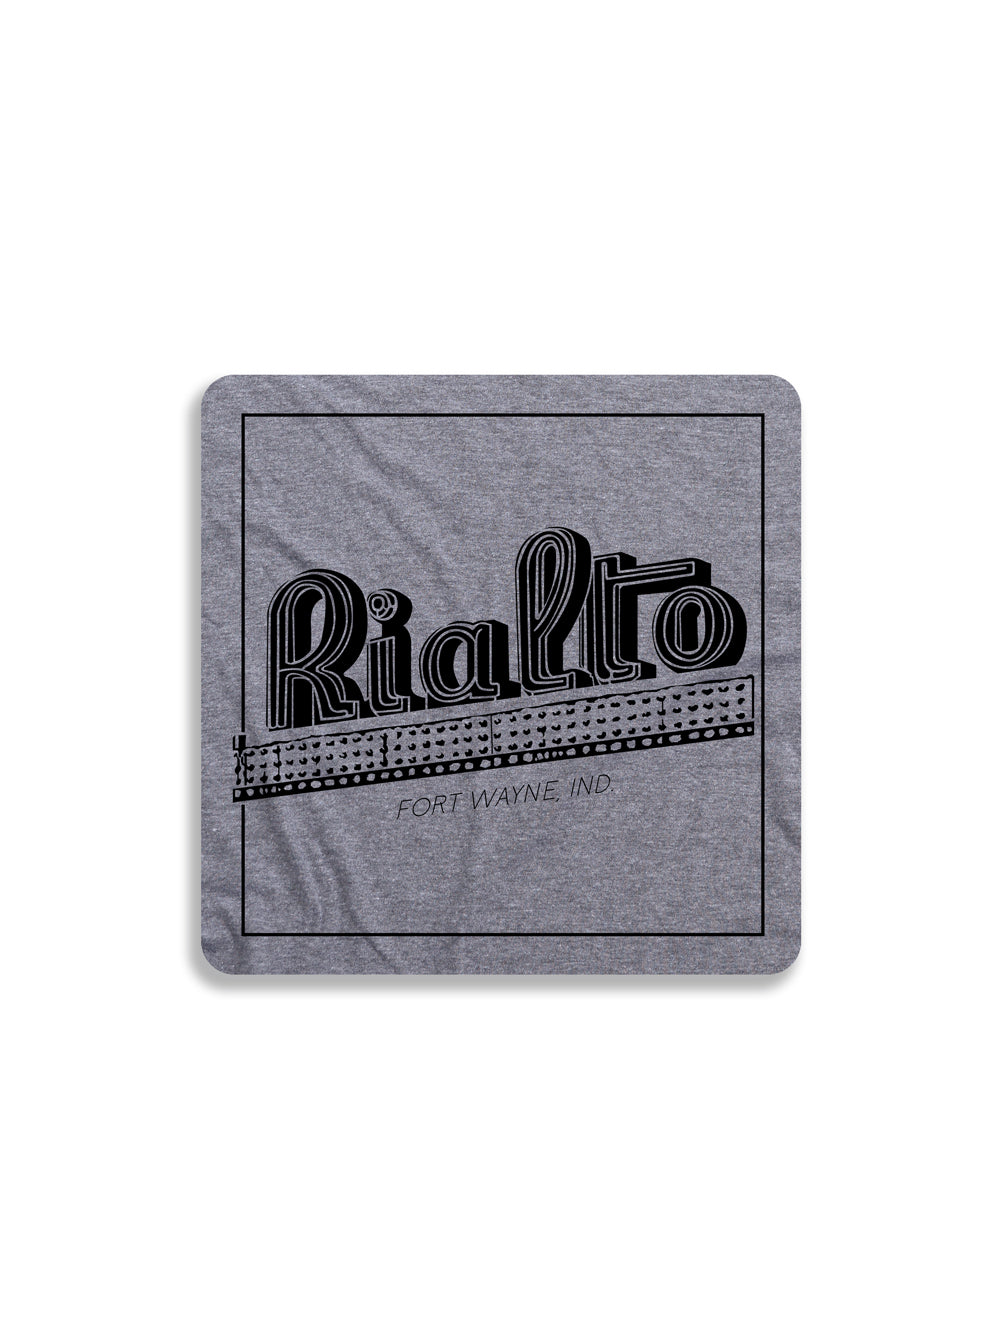 Rialto Theater gray magnet